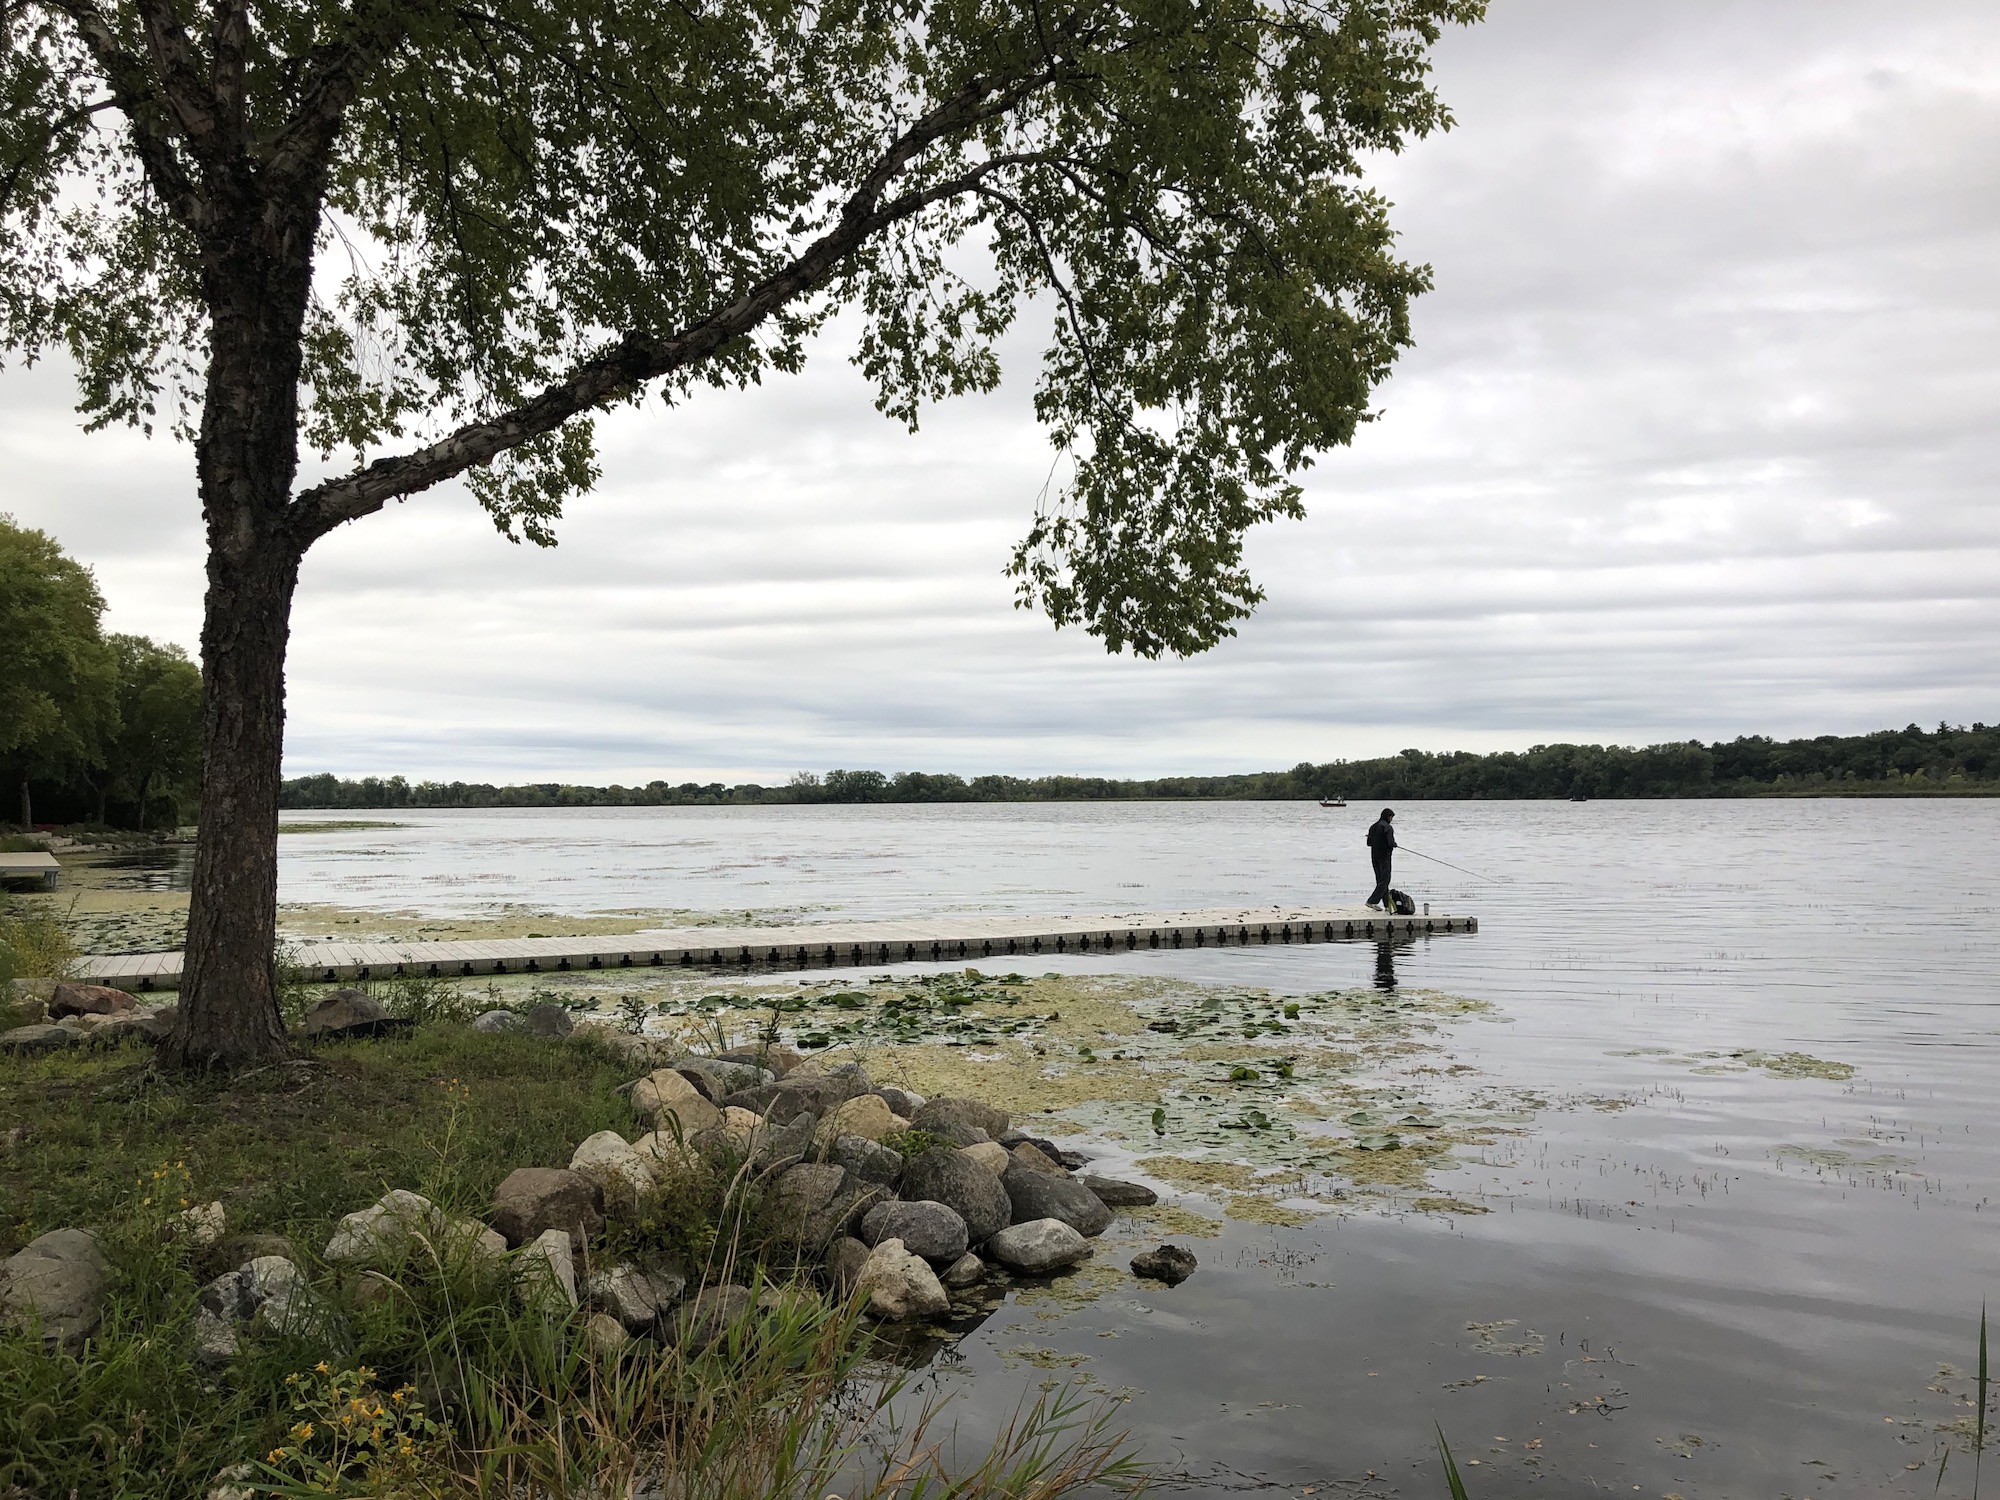 Lake Wingra on September 8, 2019.